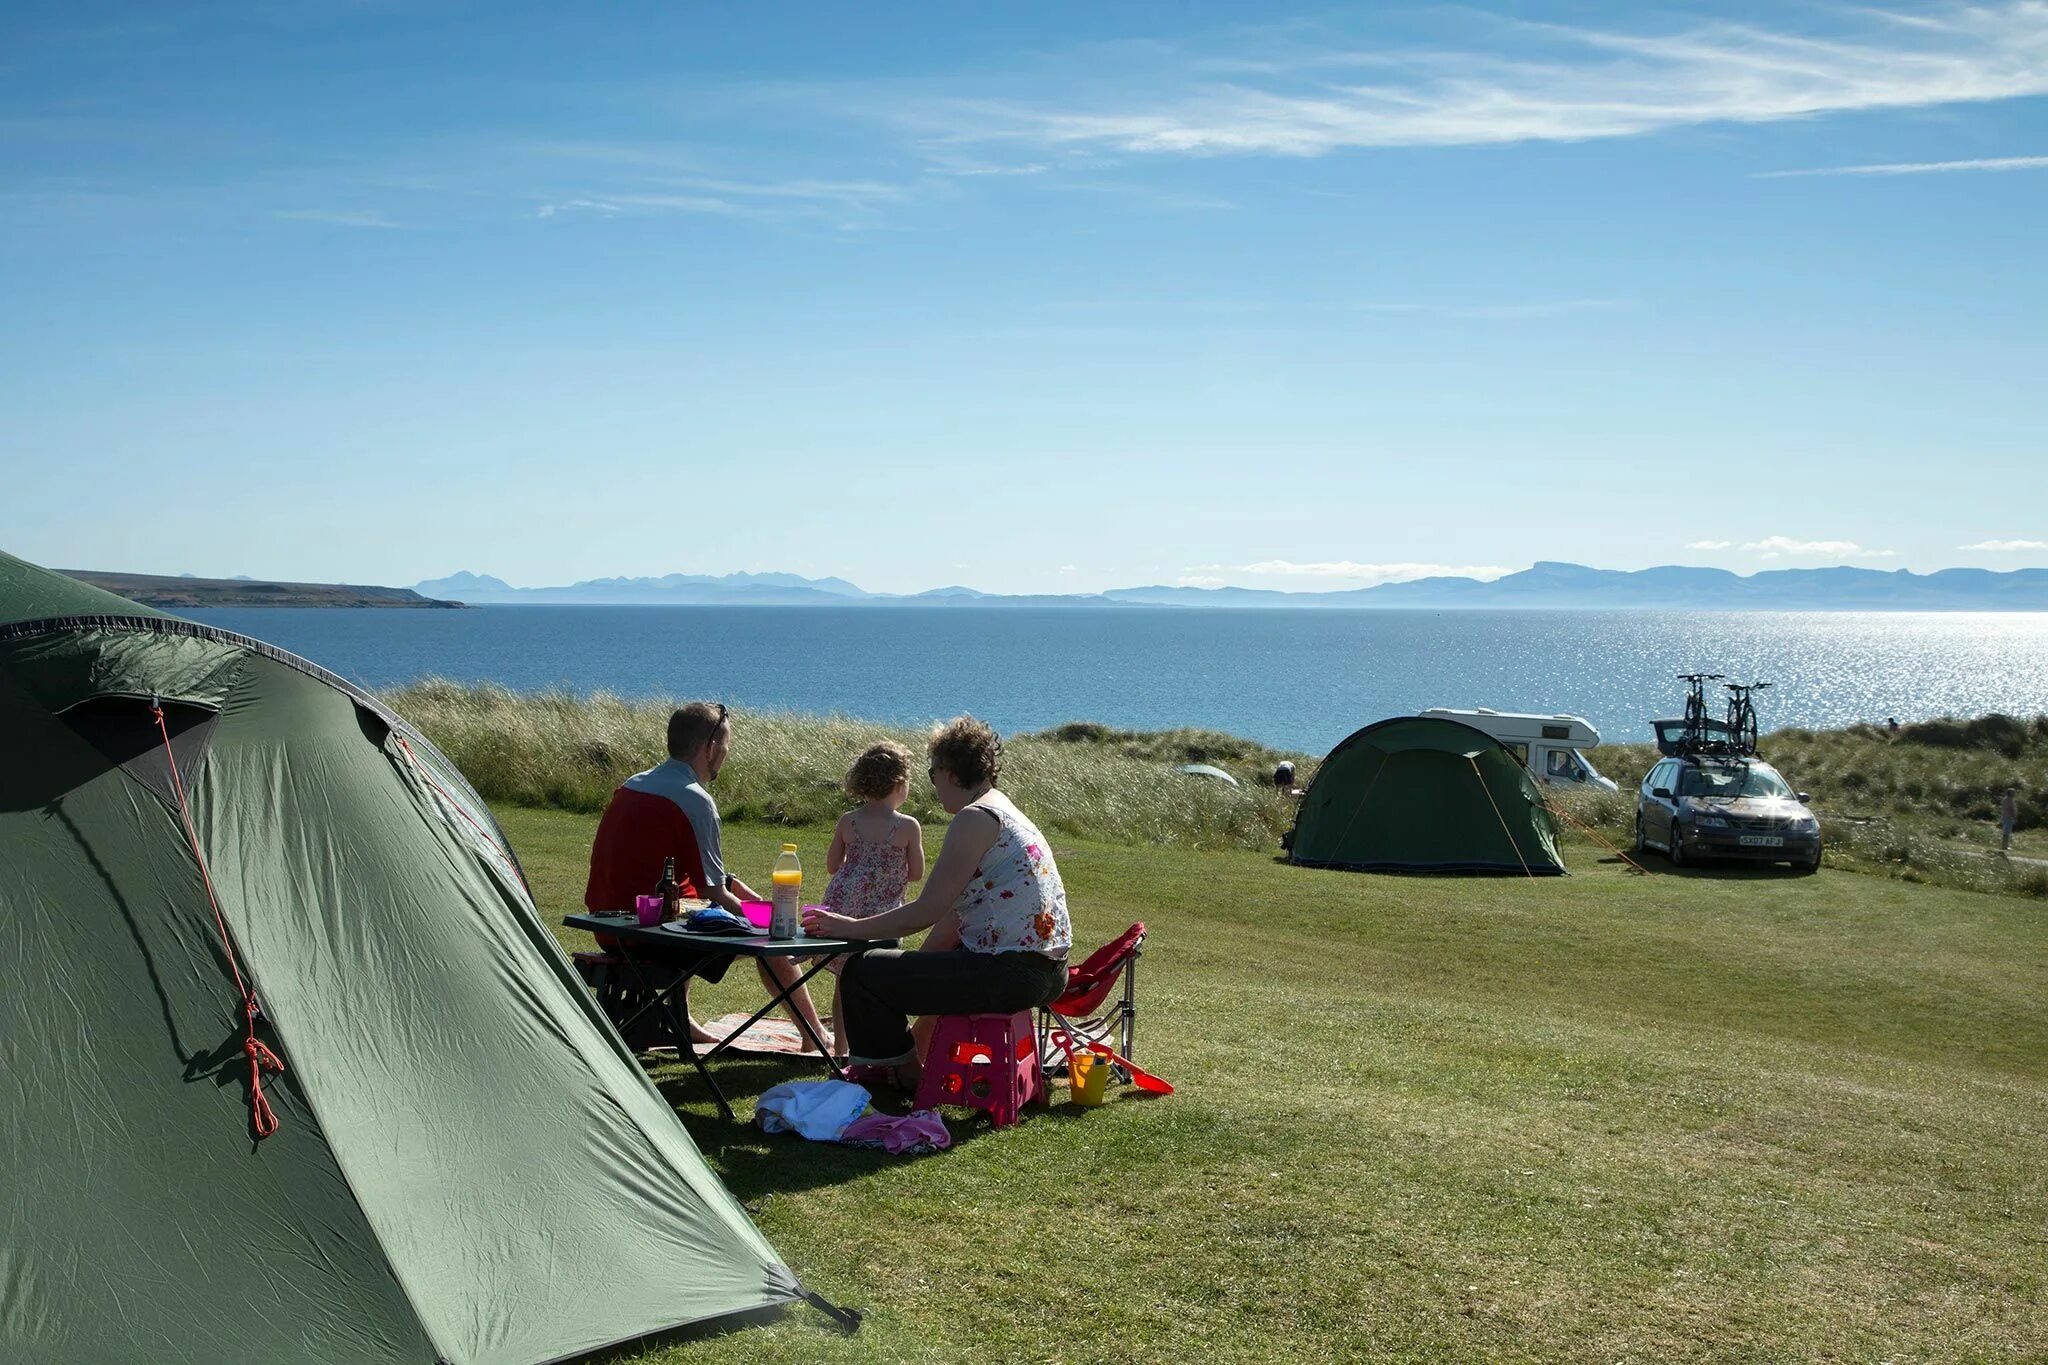 Кемпинг Холидей. Палаточный городок у моря. Палаточный лагерь на море. Палаточный лагерь для детей. Tourist camping